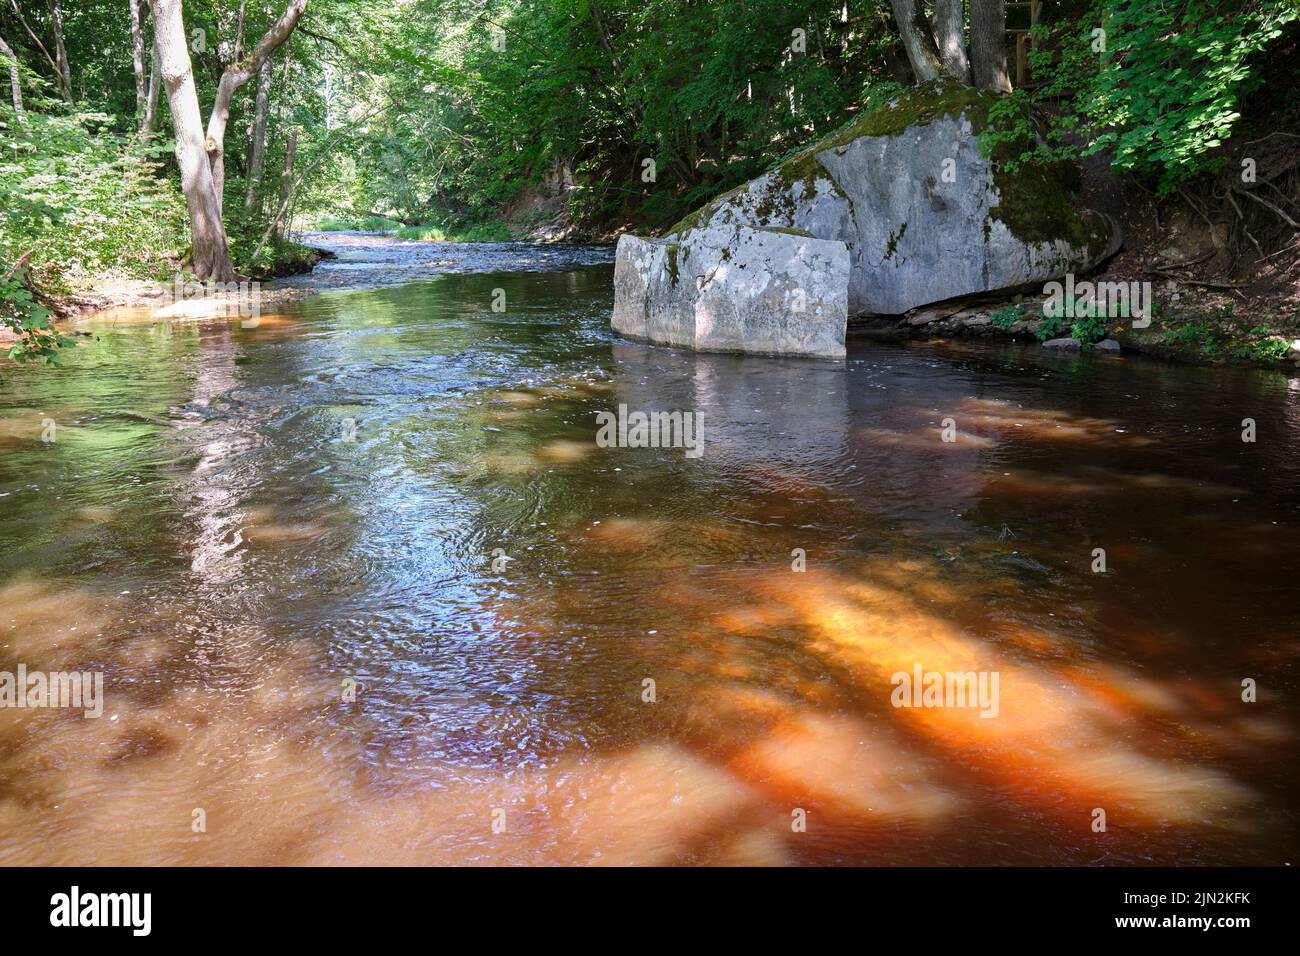 Vizla River Nature Trail, Vireshi, Vidzeme, Latvia Stock Photo